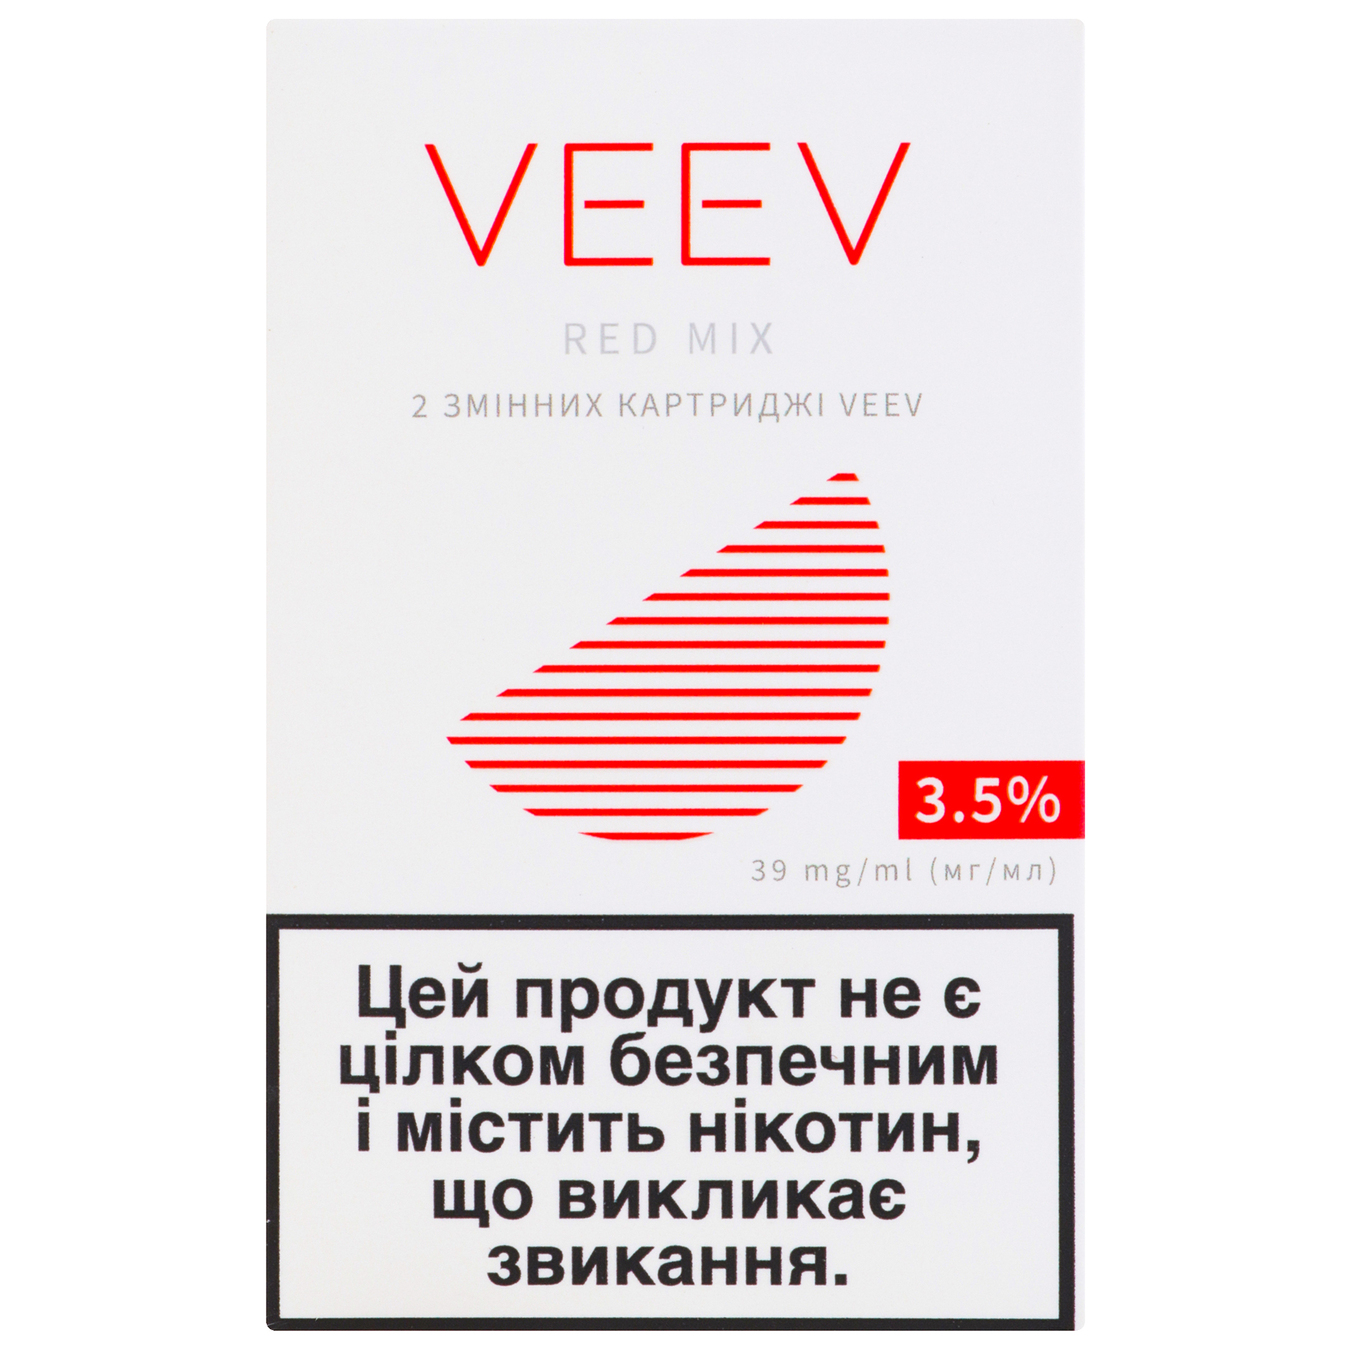 Картридж змінний Veev Red mix 3,5% (ціна вказана без акцизу)